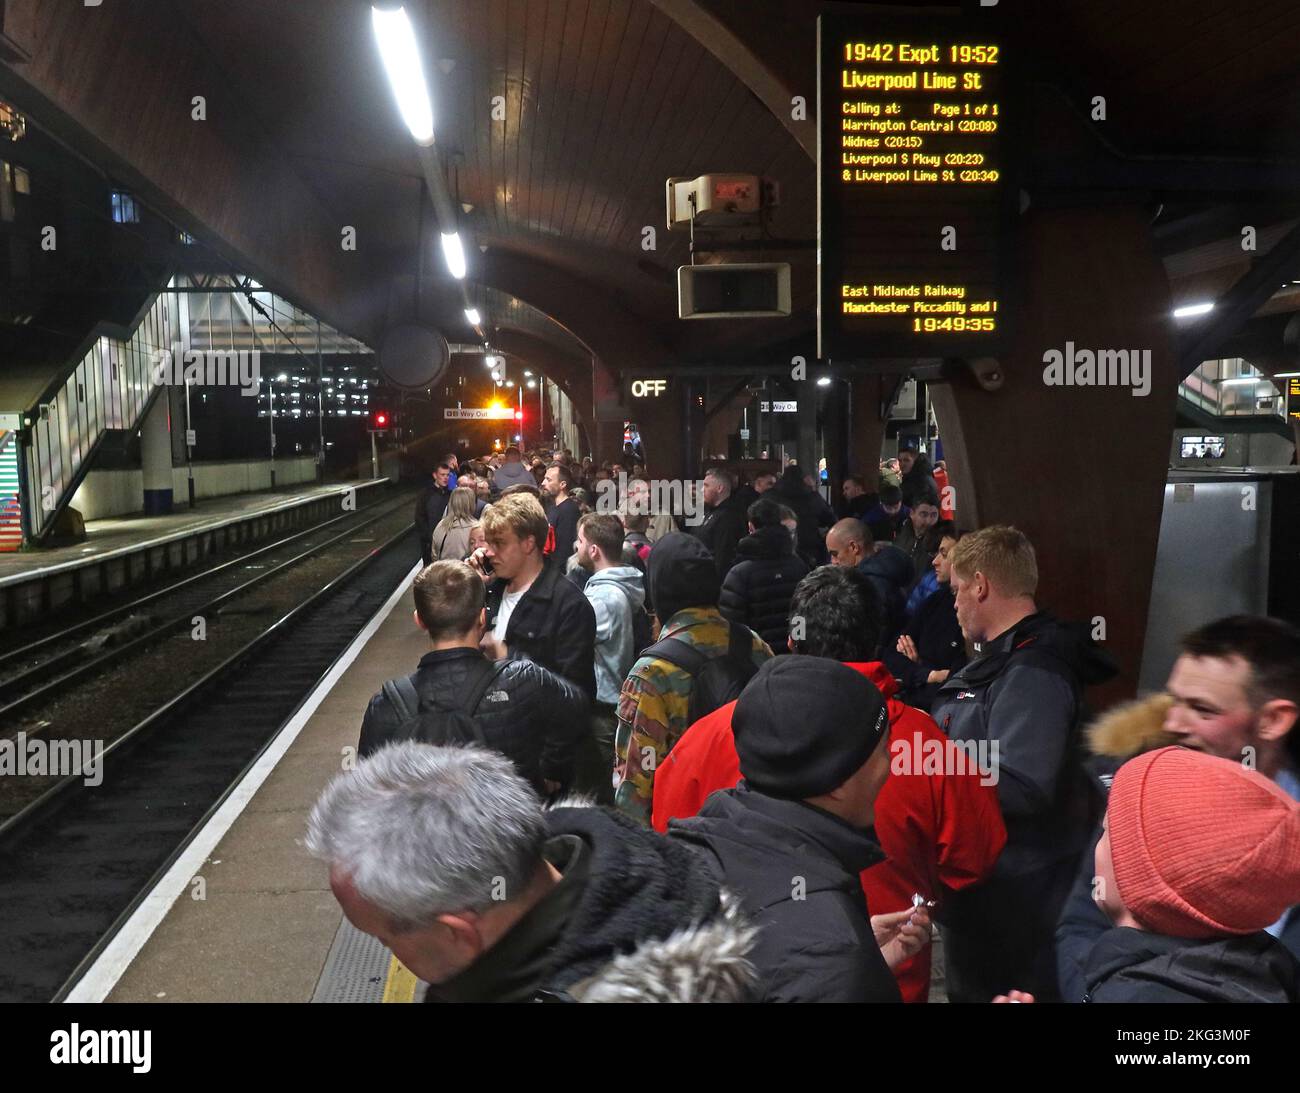 Trafficata piattaforma ferroviaria, passeggeri della sera in attesa di imballati, in ritardo e cancellati treni del Nord, alla stazione di Oxford Road, Manchester, Regno Unito Foto Stock